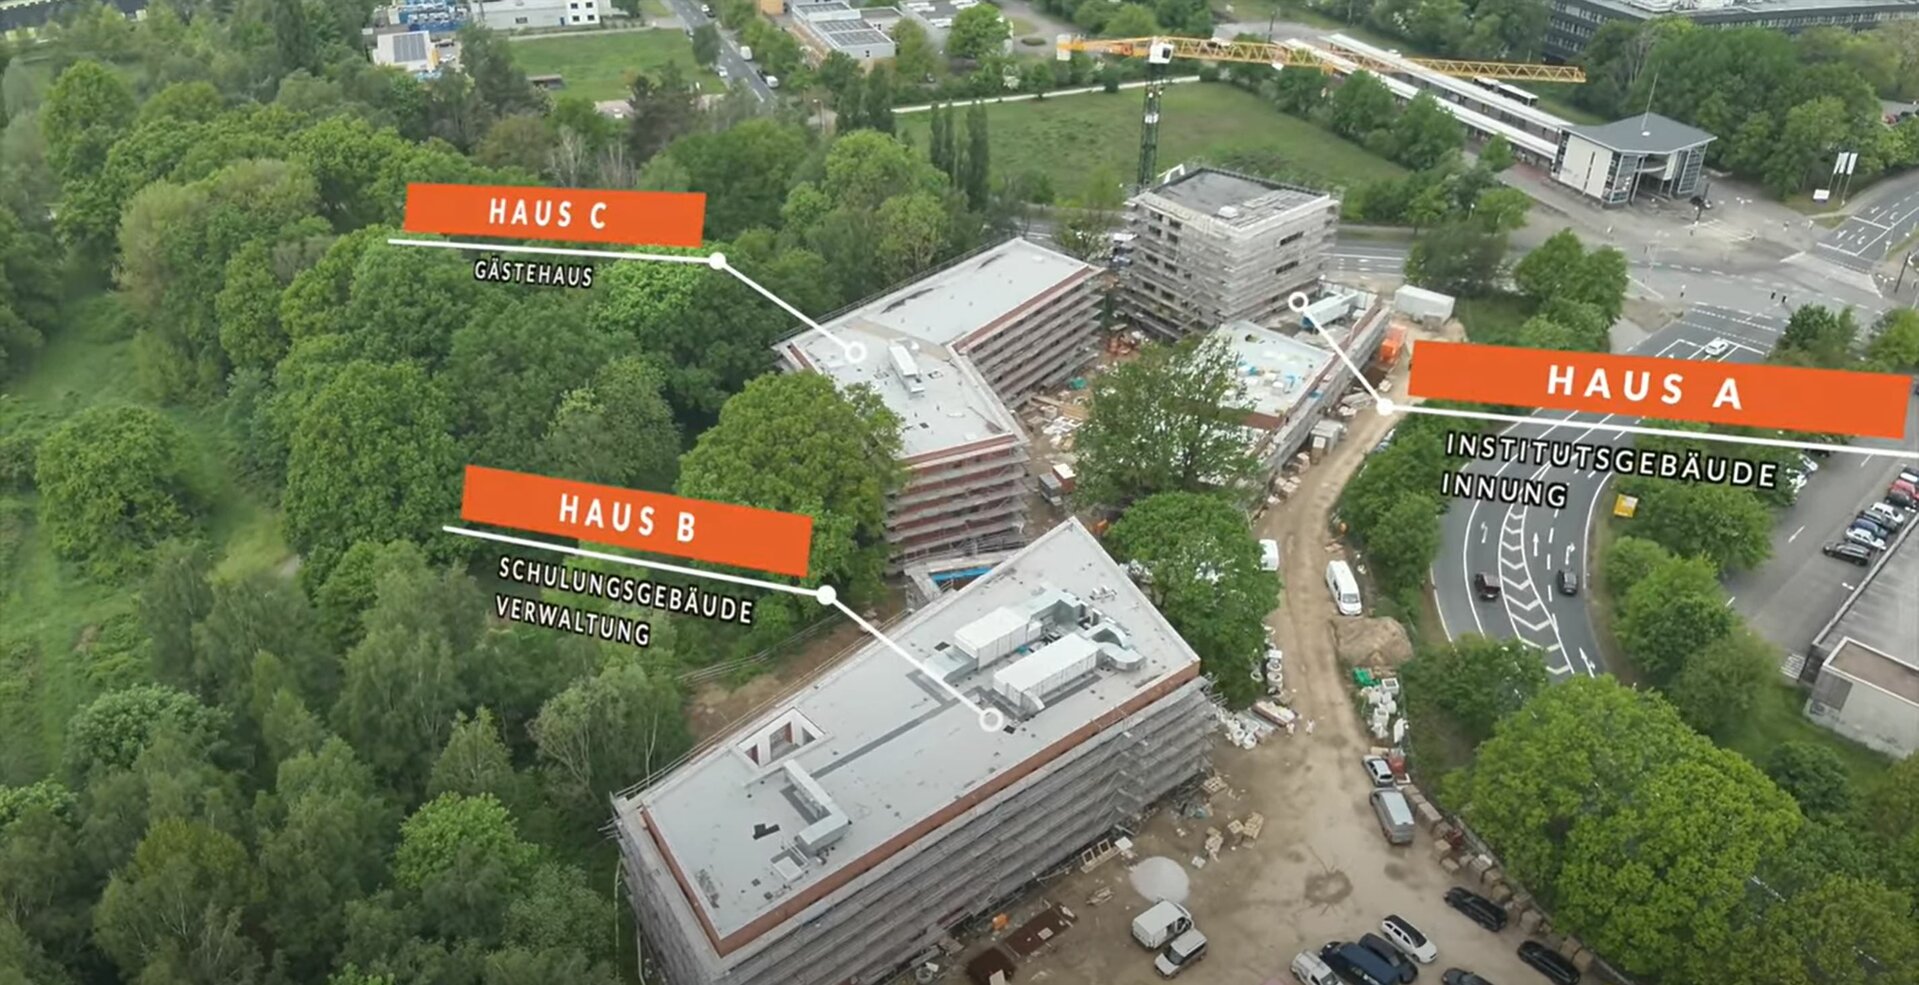 Auf dem Bild sind drei Rohbauten zu sehen, die die Schornsteinfegerschule in Hannover darstellen. Diese wurde durch das Gundlach Bauunternehmen in Hannover errichtet.